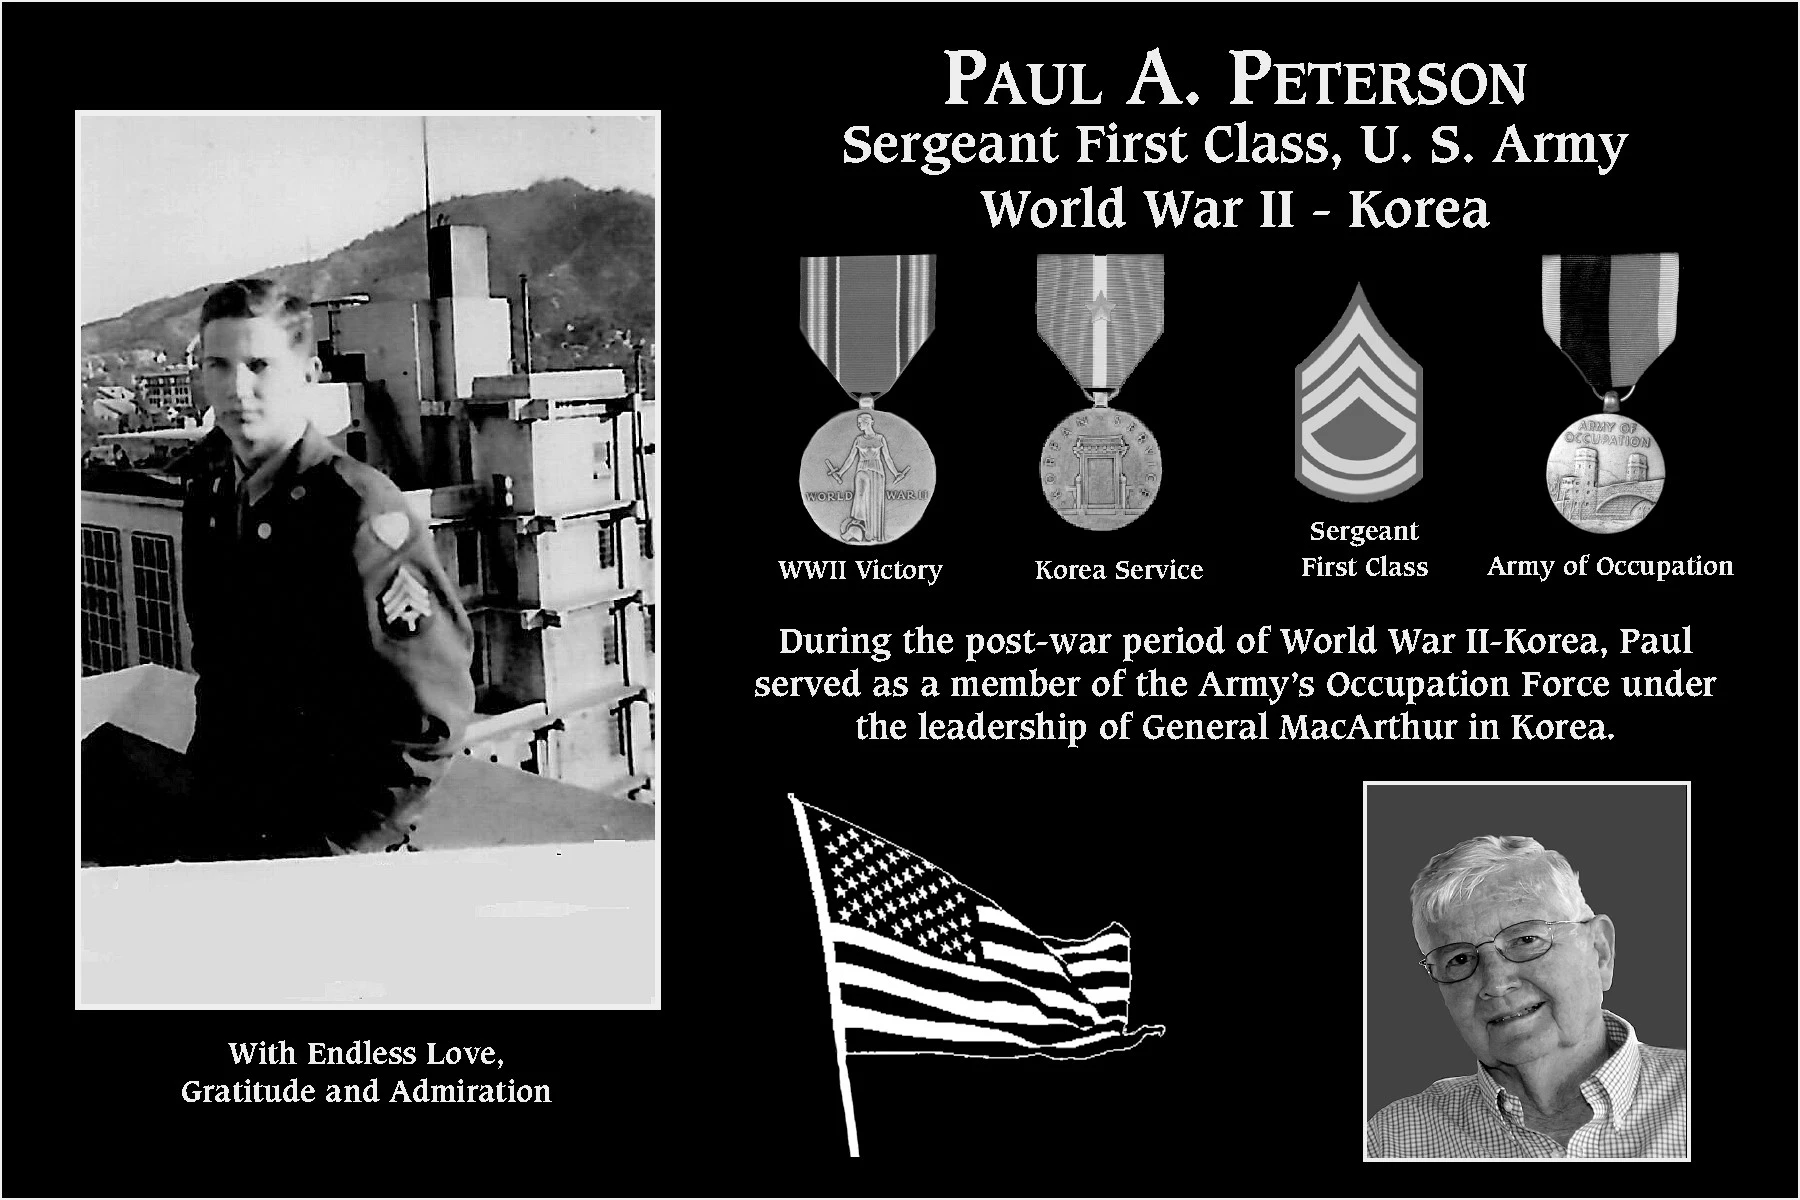 Paul A. Peterson